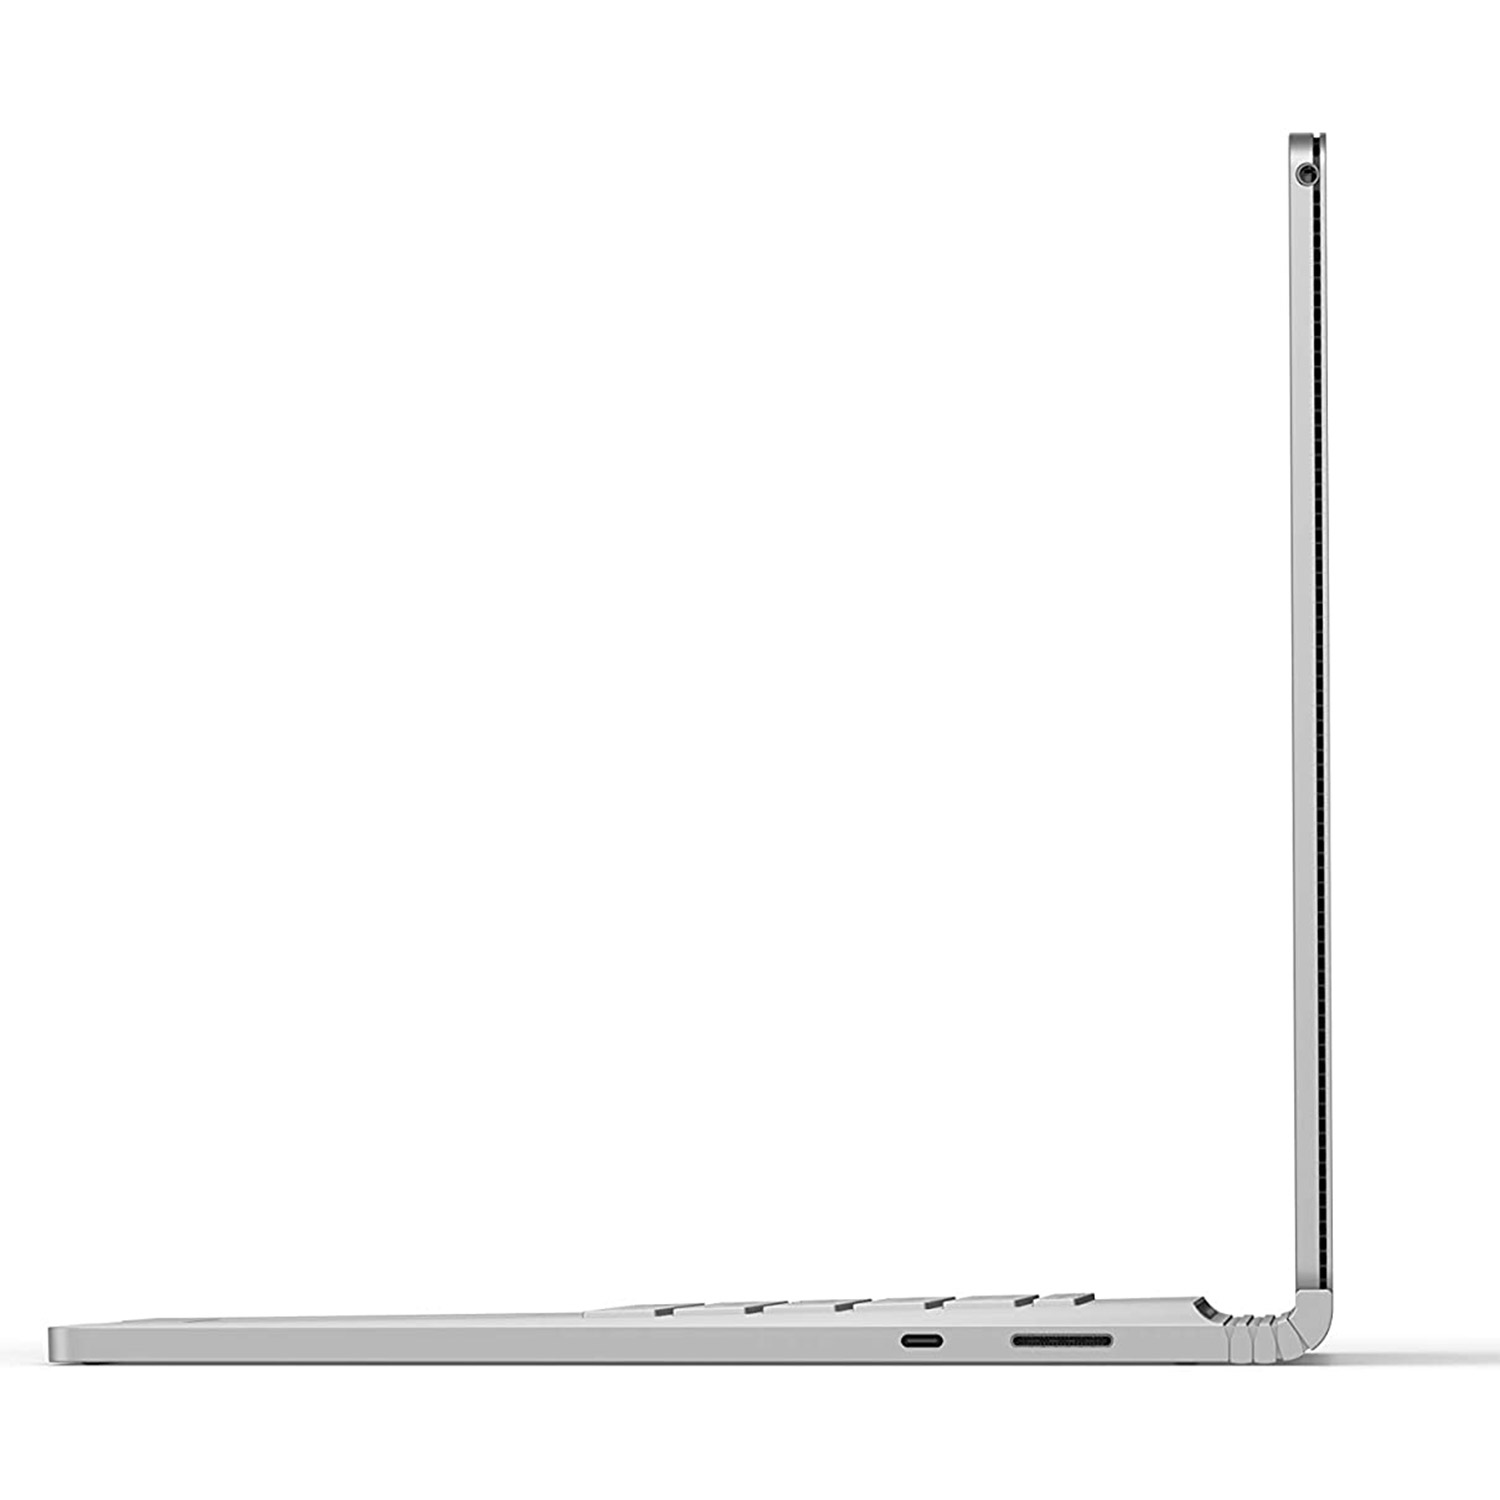 قیمت و مشخصات لپ تاپ 13 اینچی مایکروسافت مدل Surface Book 3-i5 8GB 256GB -زیراکو